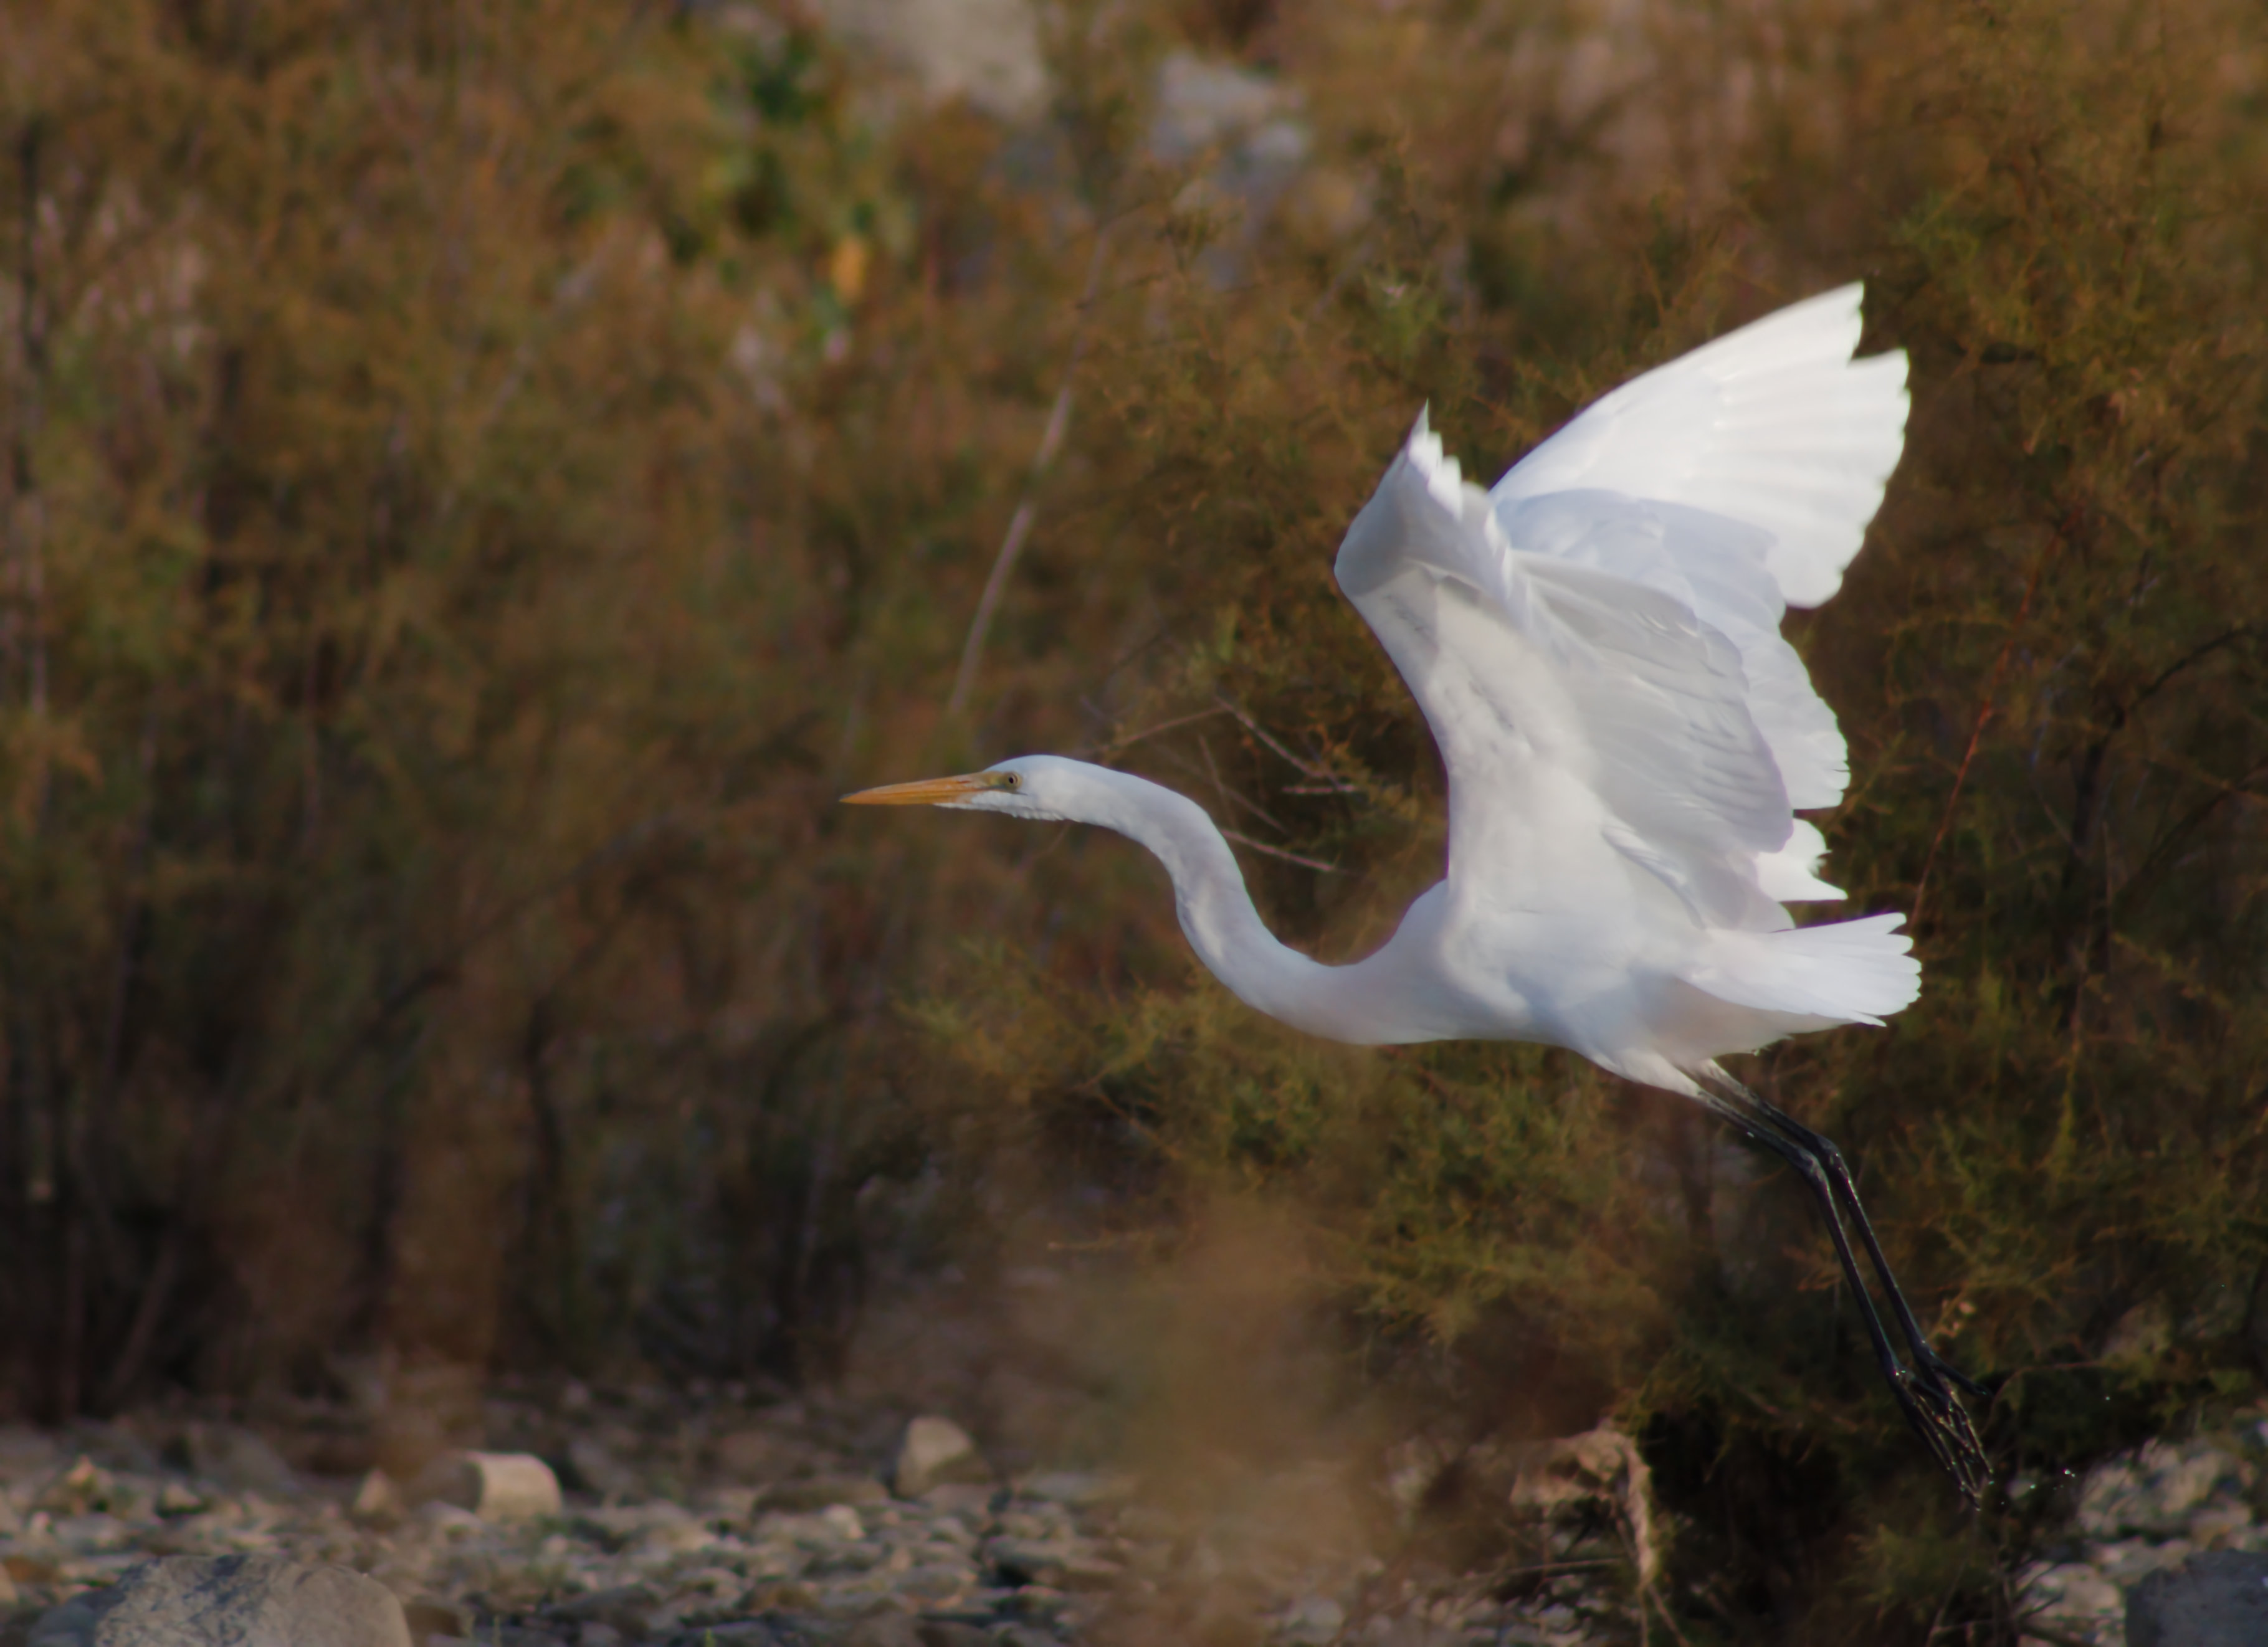 Great Egret, flying